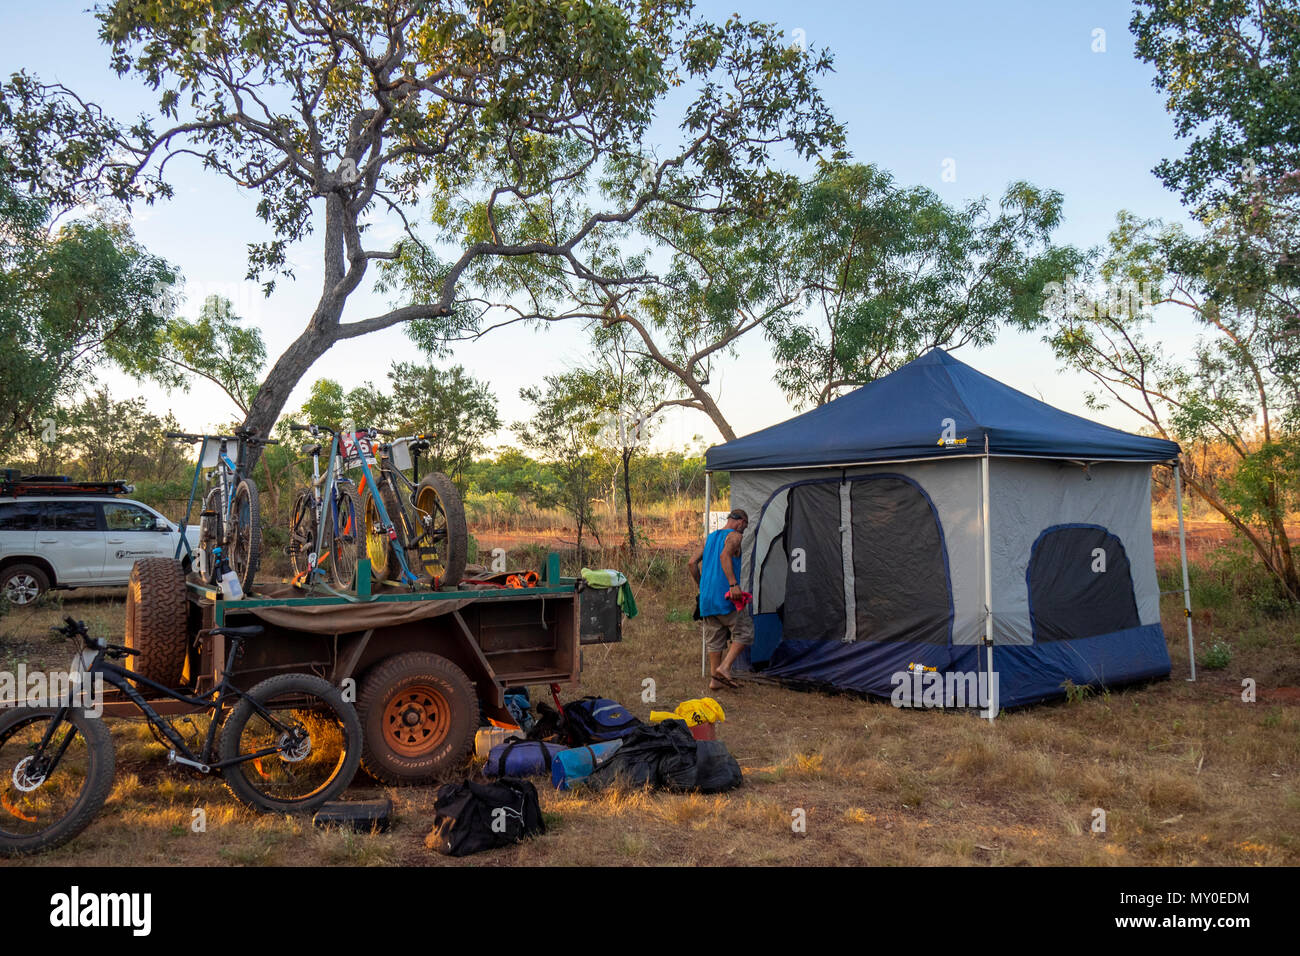 Mountain bike su un rimorchio e un fatbike davanti a una tenda in un campeggio durante il Gibb Challenge 2018 Kimberley WA Australia. Foto Stock